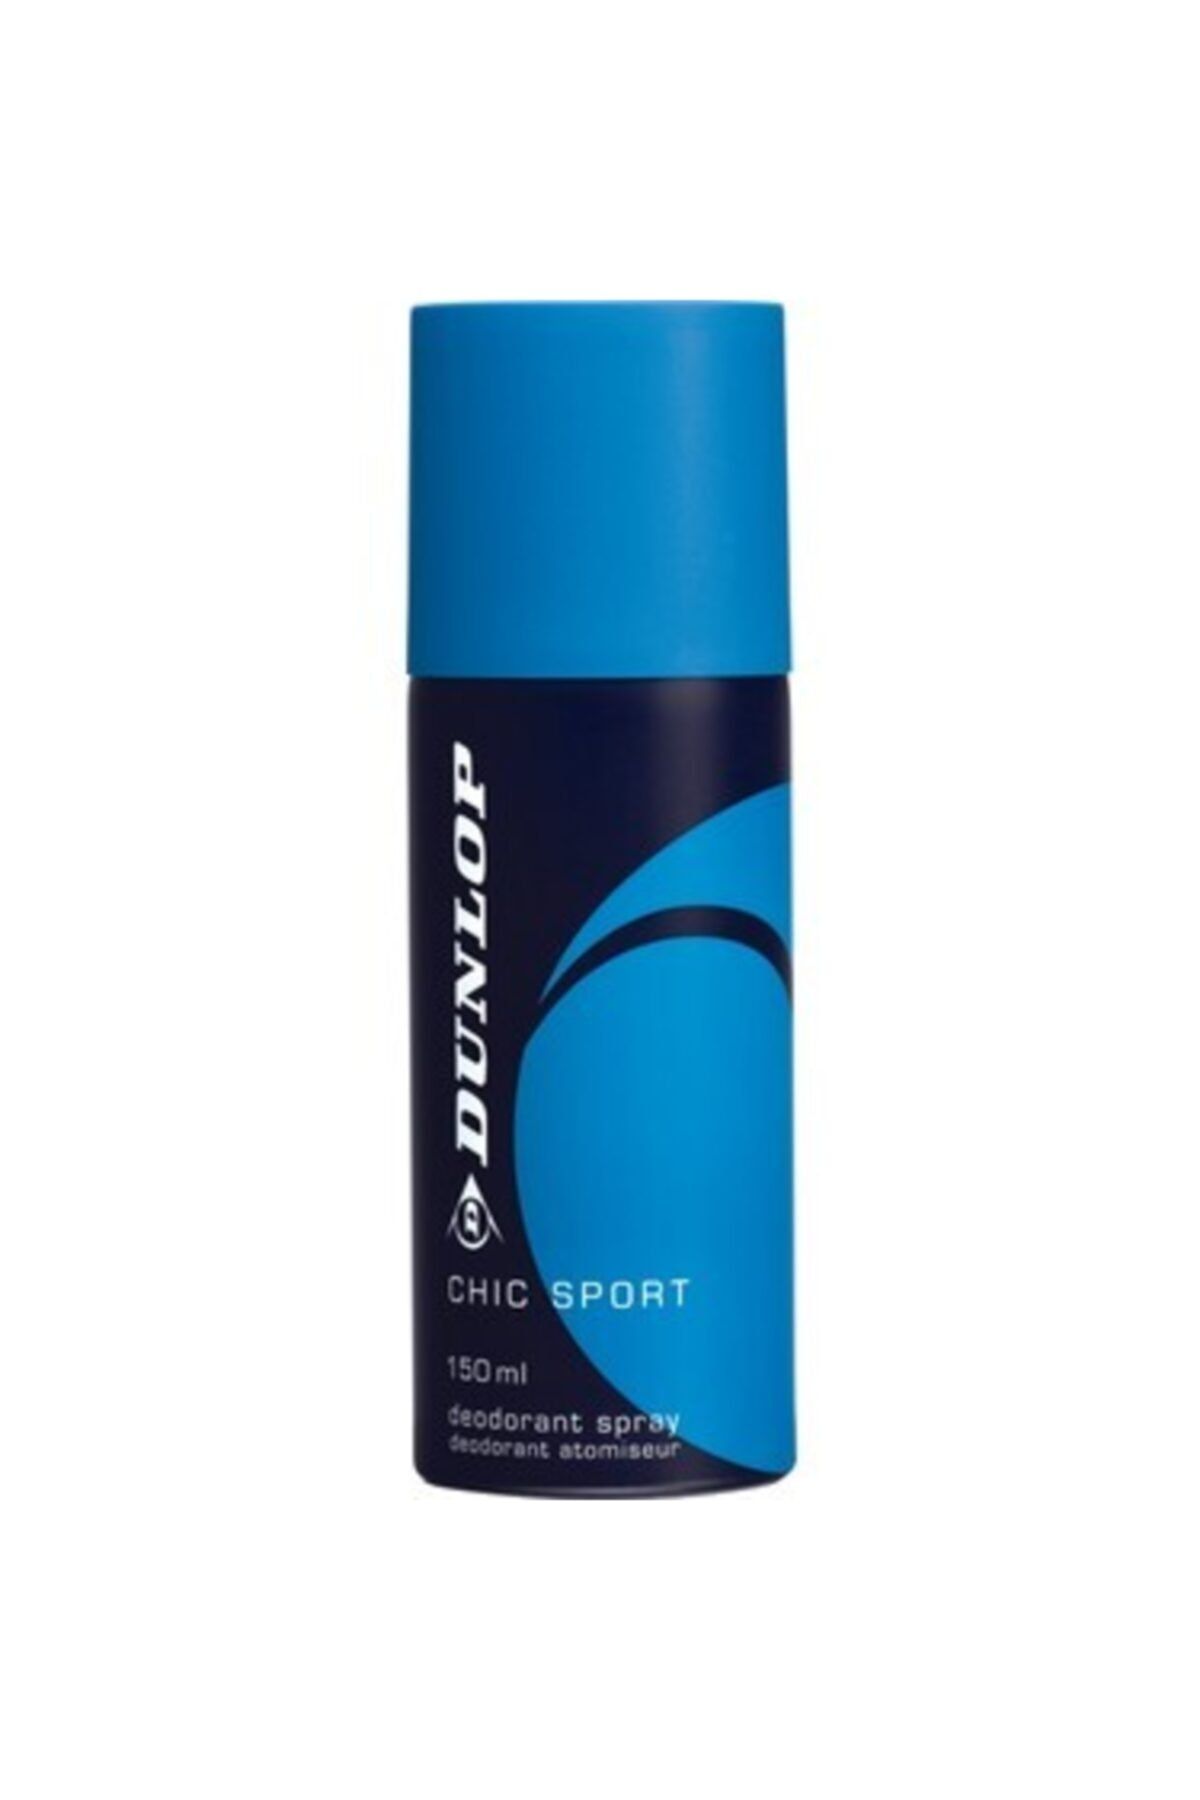 Dunlop Deodorant Mavı 150ml.